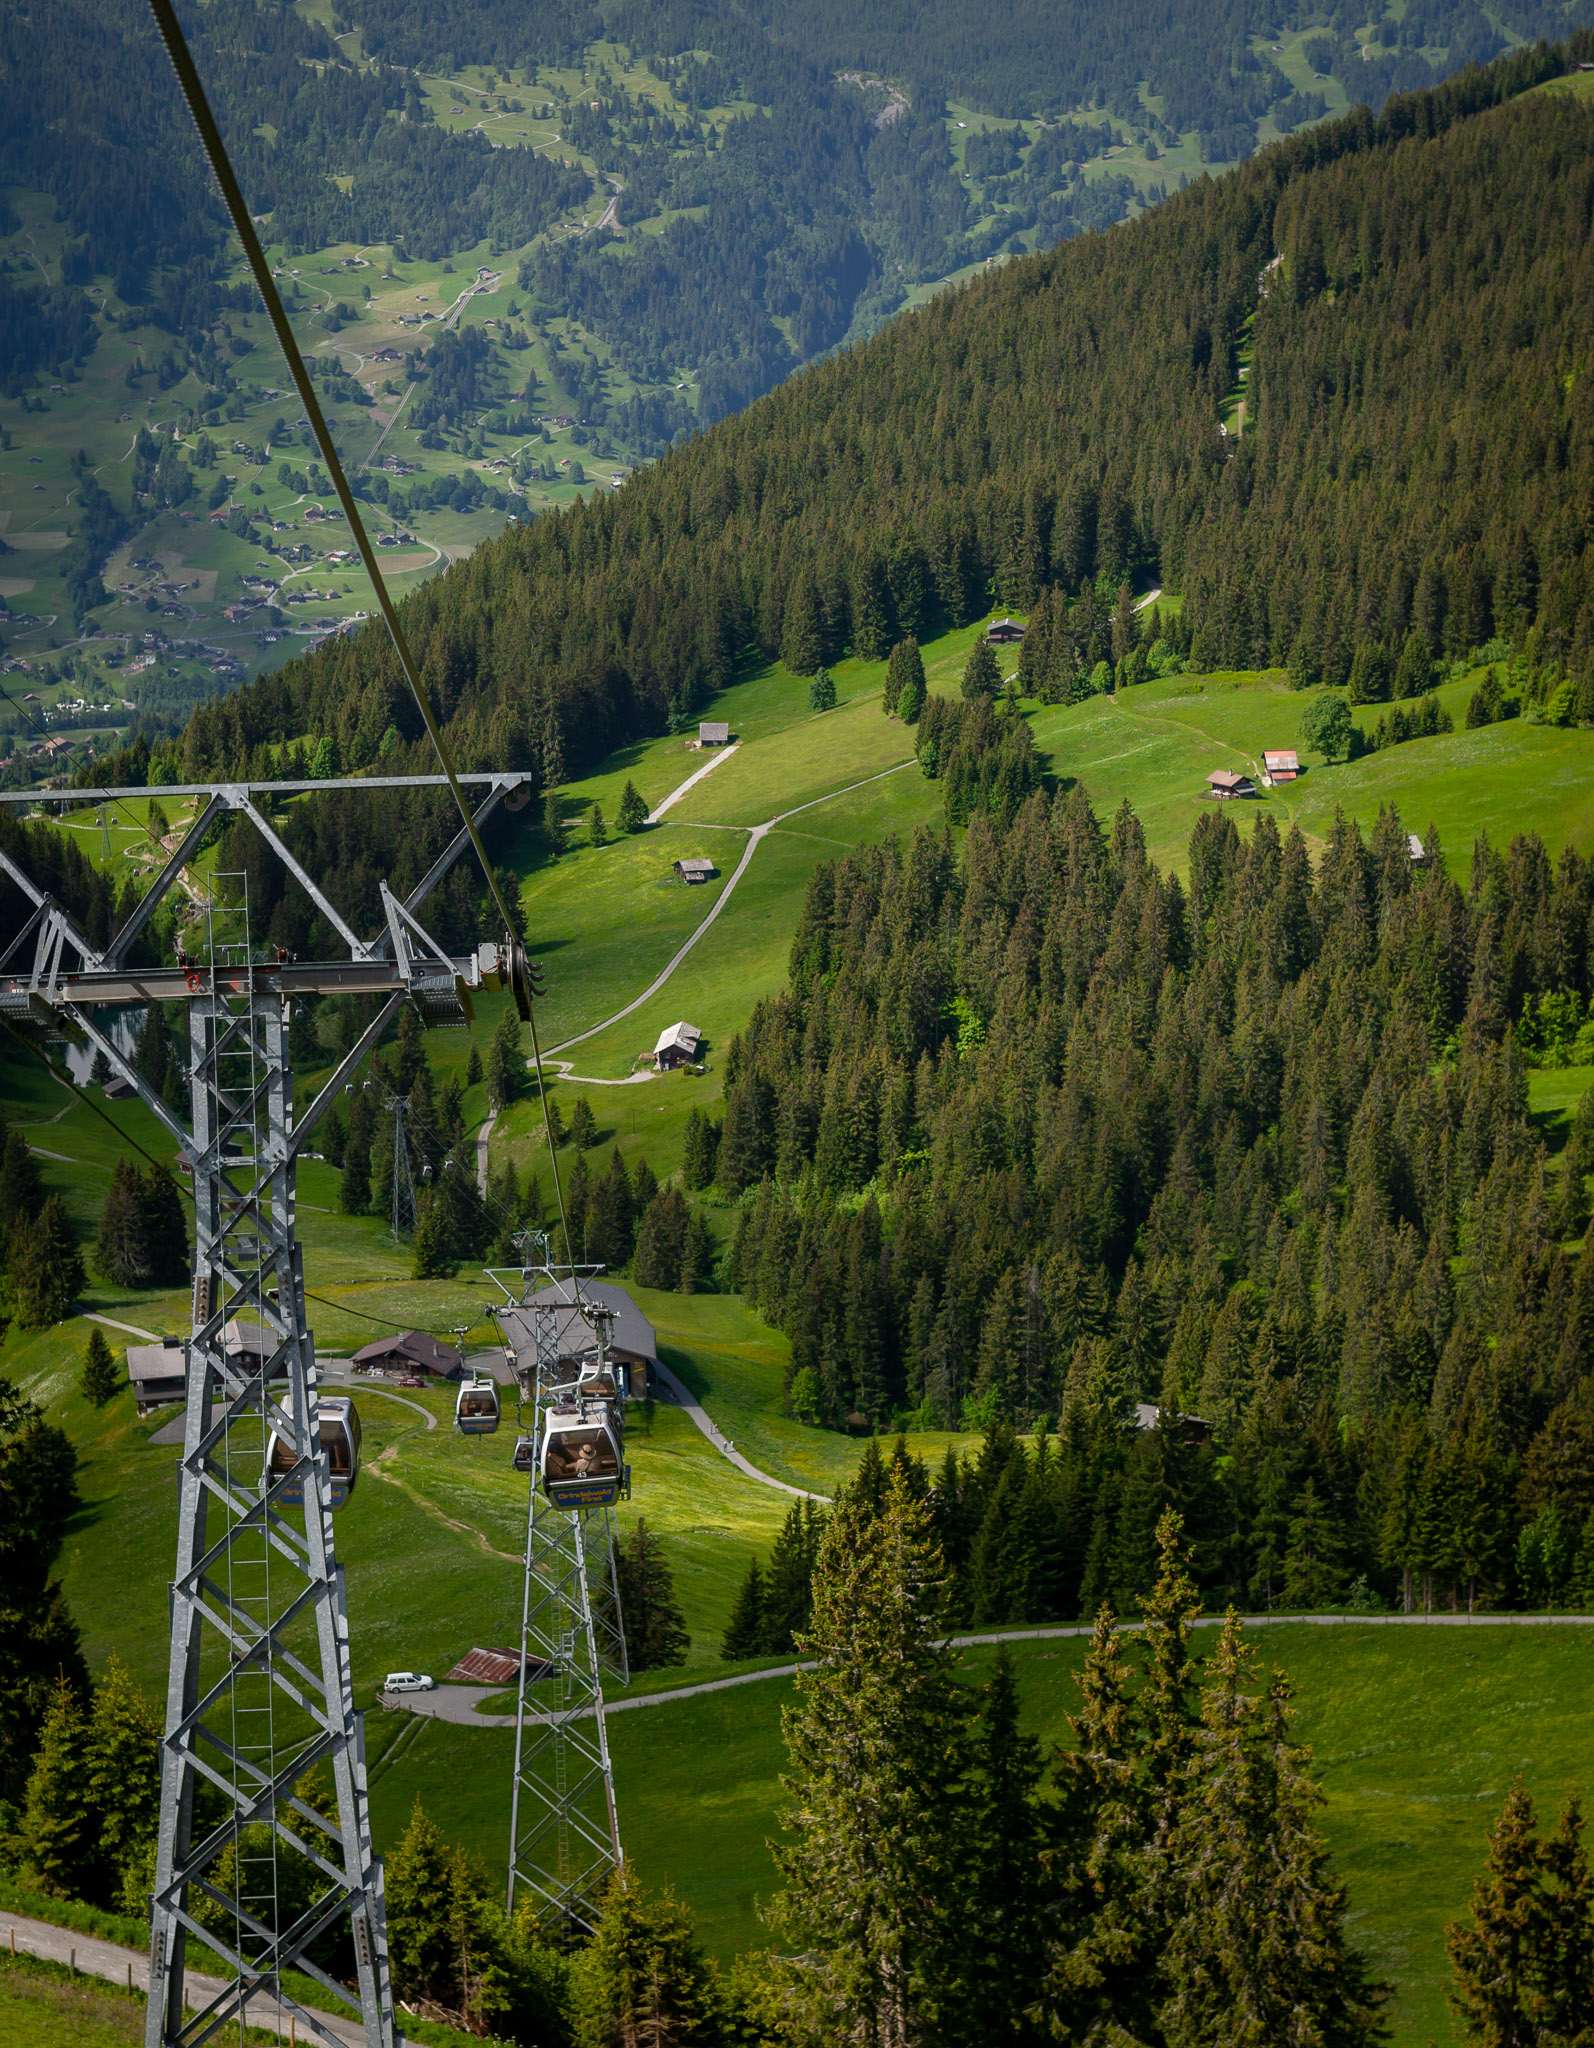 First gondola back down to Grindelwald – world's longest gondola